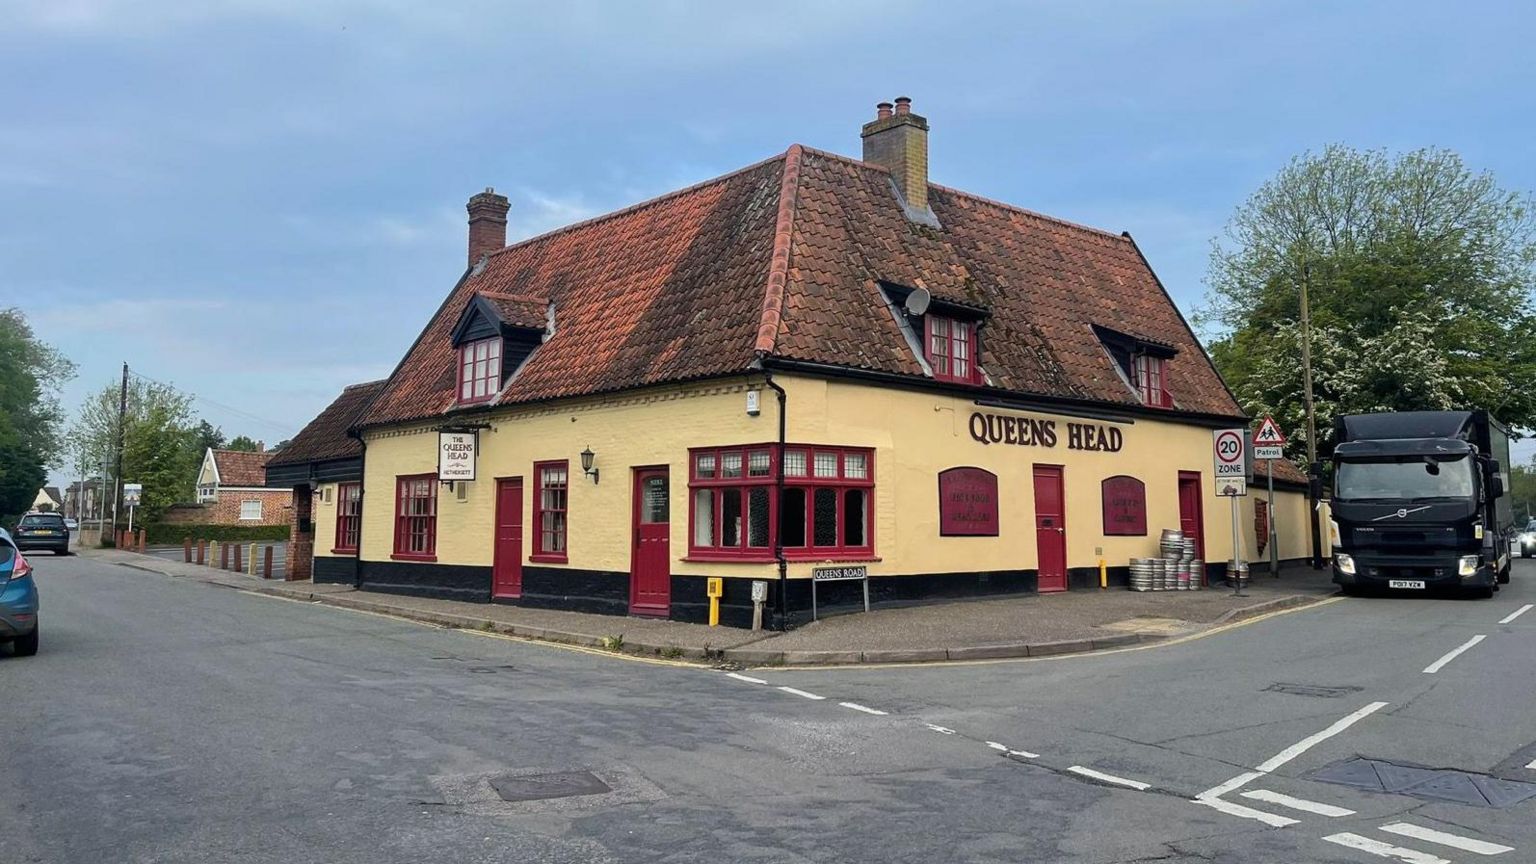 The Queen's Head pub in Hethersett, Norfolk